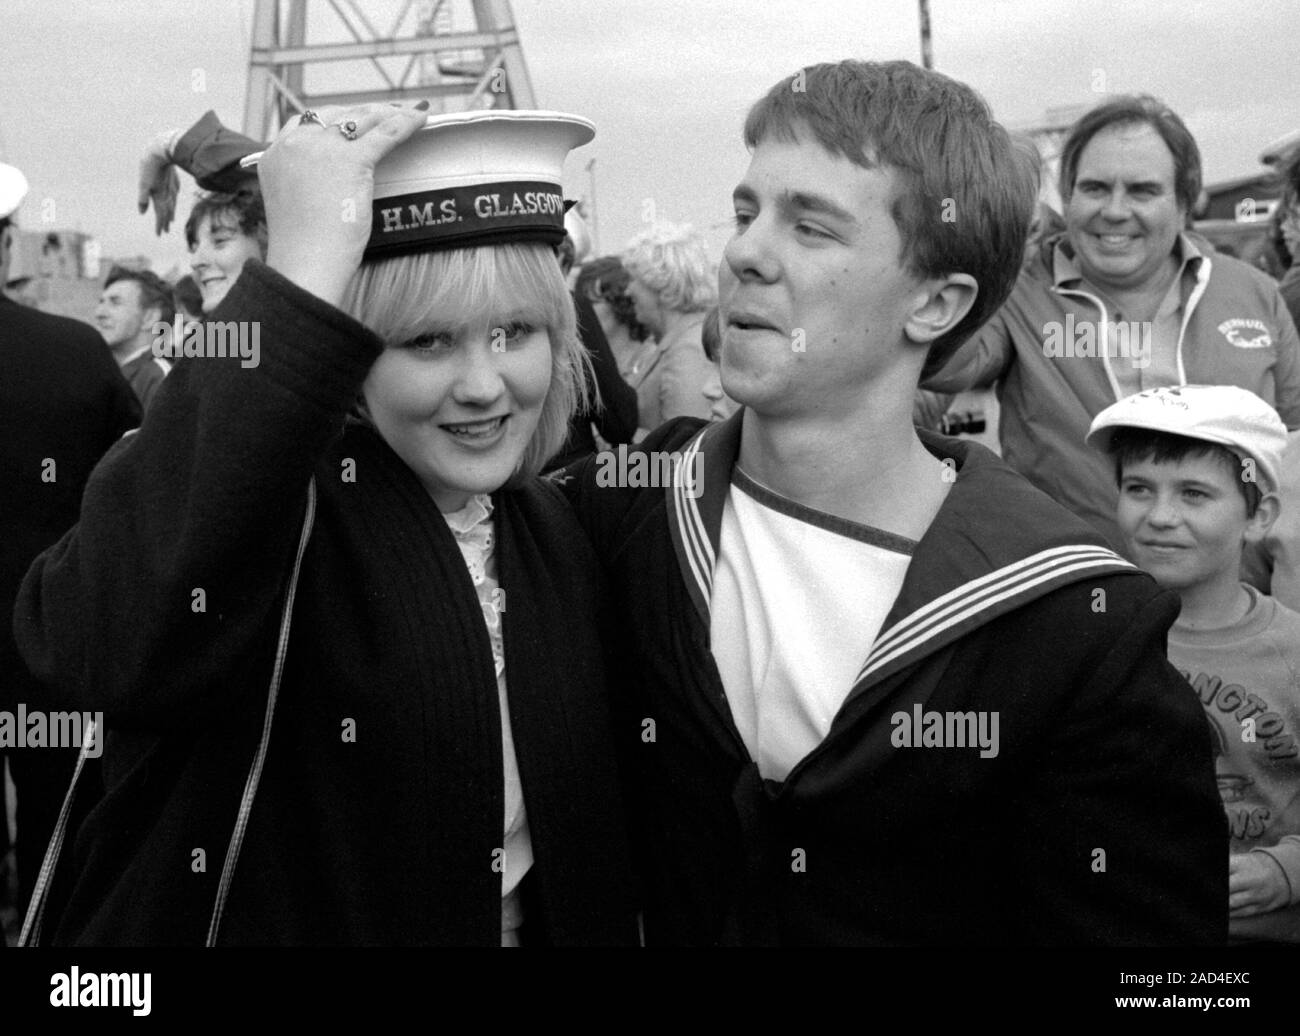 AJAXNETPHOTO. 19e Juin, 1982 - Portsmouth, Angleterre. Vétéran des Malouines - - UN MARIN DE LA CLASSE DE SHEFFIELD (TYPE 42/1&2) destroyer HMS GLASGOW perd son chapeau à une jolie jeune parent lorsque sa bombe endommagé navire est retourné à Portsmouth en 1982. PHOTO:JONATHAN EASTLAND/AJAX. REF:HD NA GLAS 82 16. Banque D'Images